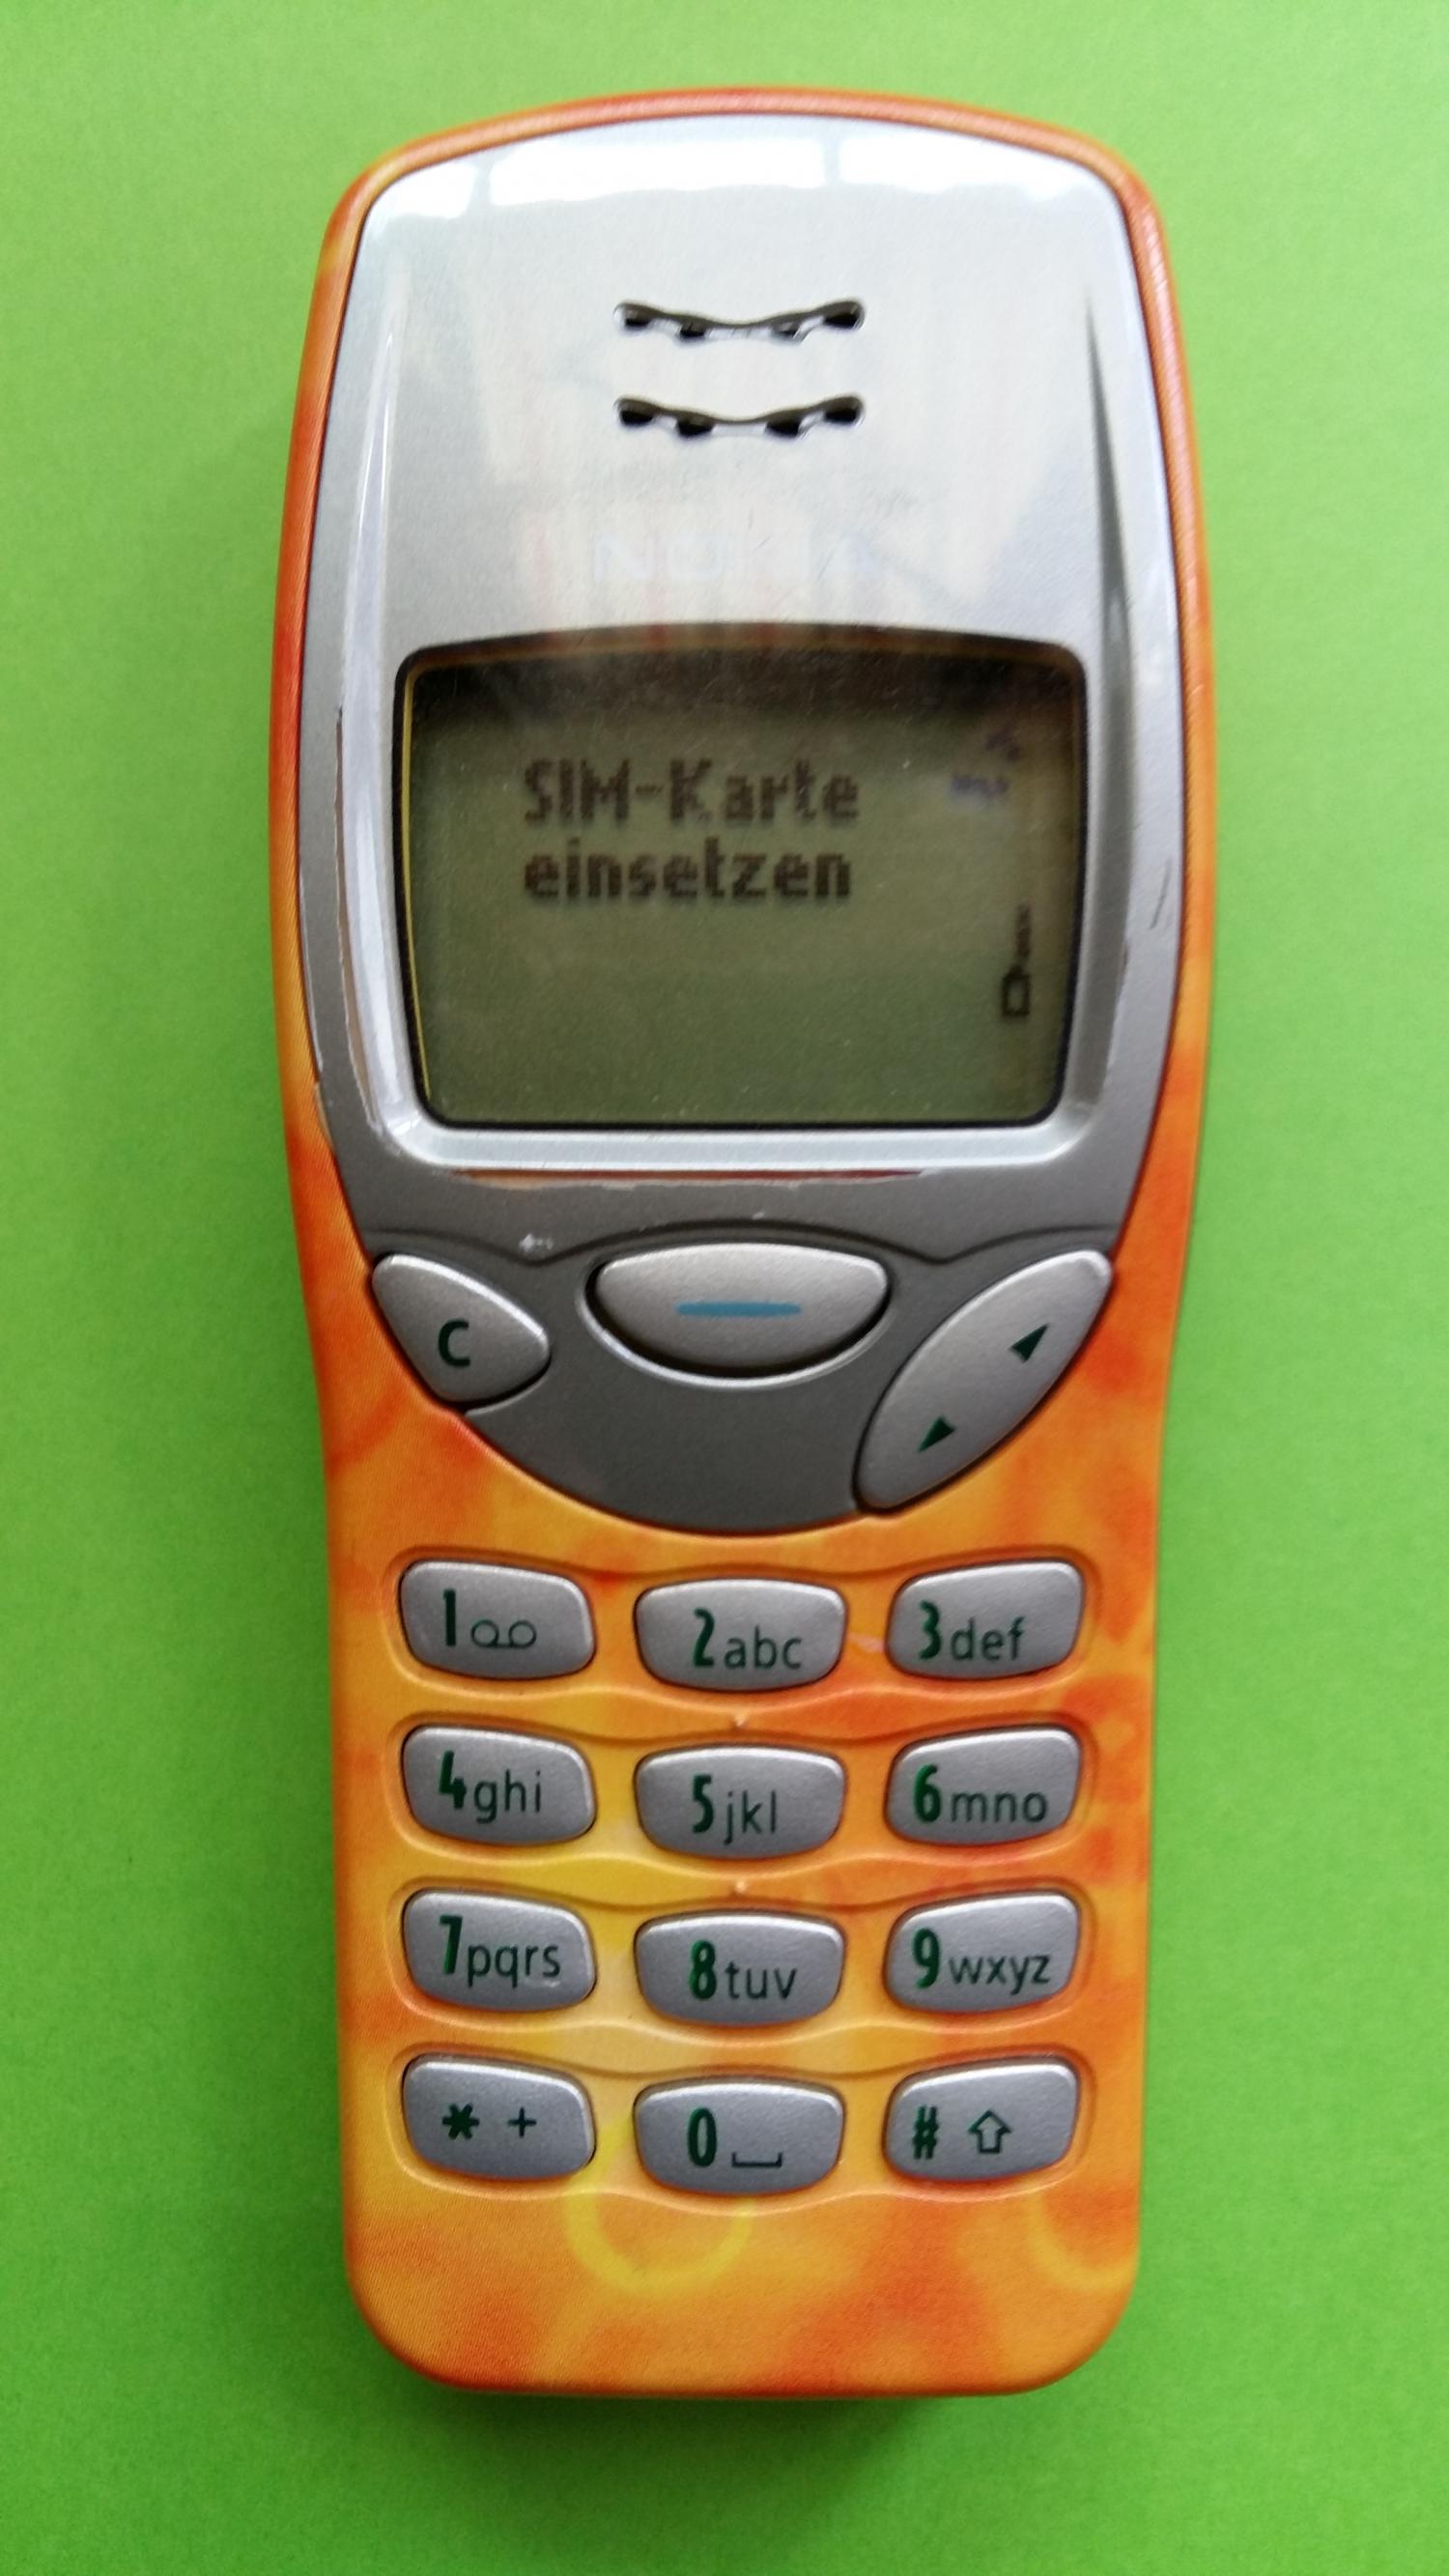 image-7305545-Nokia 3210 (4)1.jpg